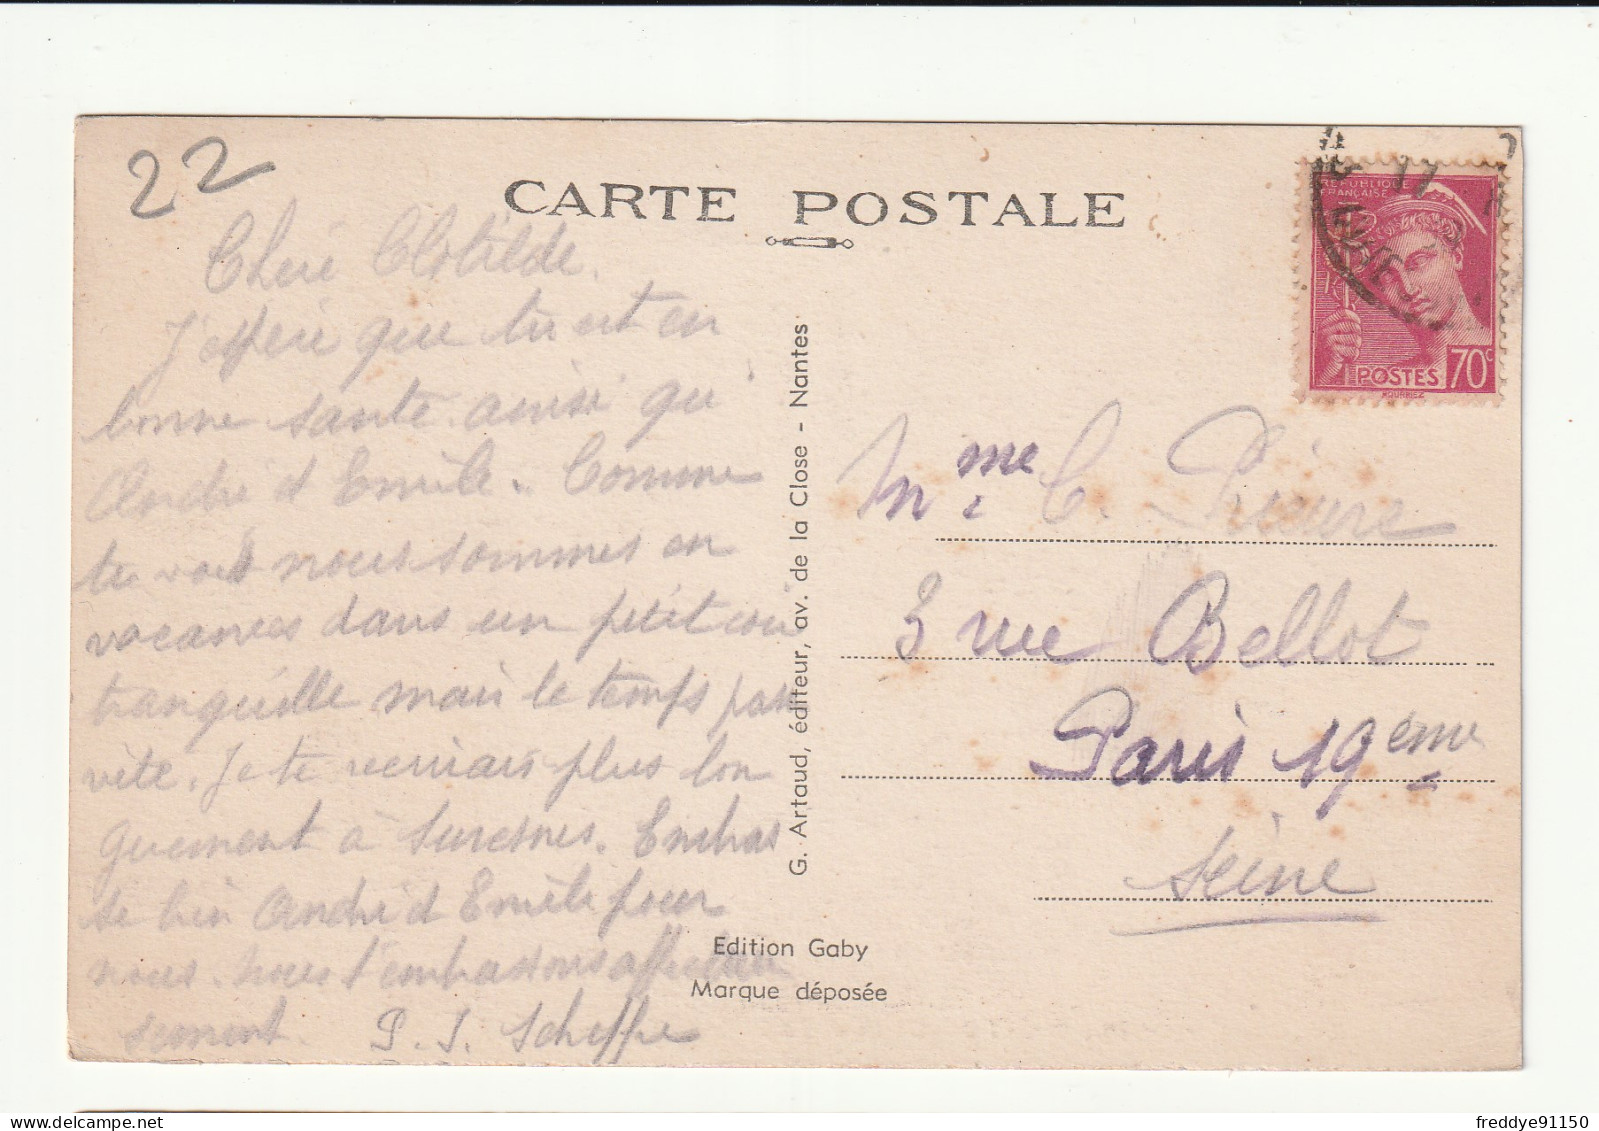 22 . Saint Jacut De La Mer . Le Port . 1917 - Saint-Jacut-de-la-Mer